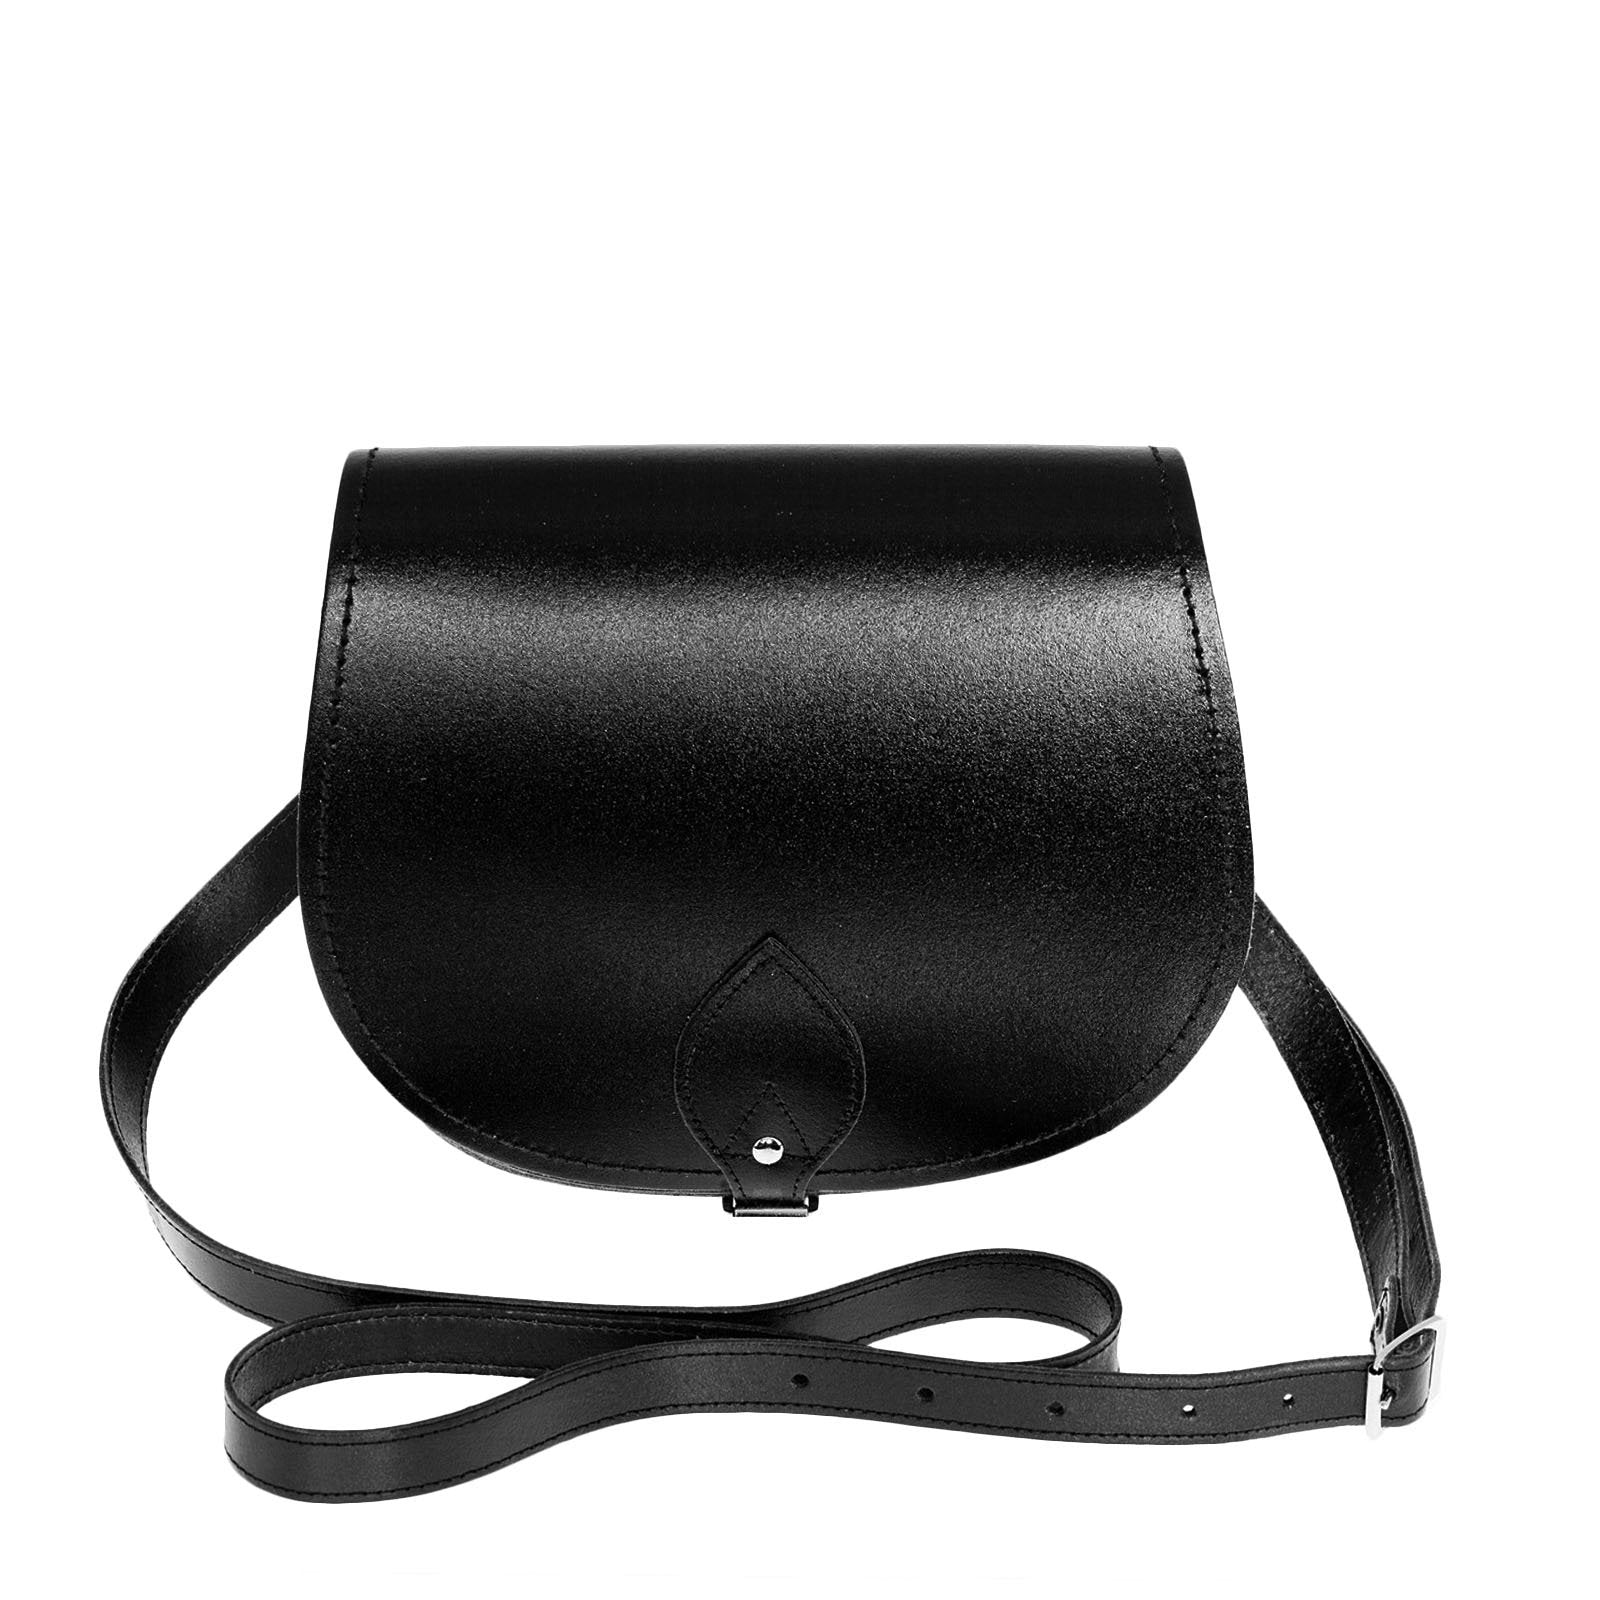 Handmade Leather Saddle Bag - Black - Small